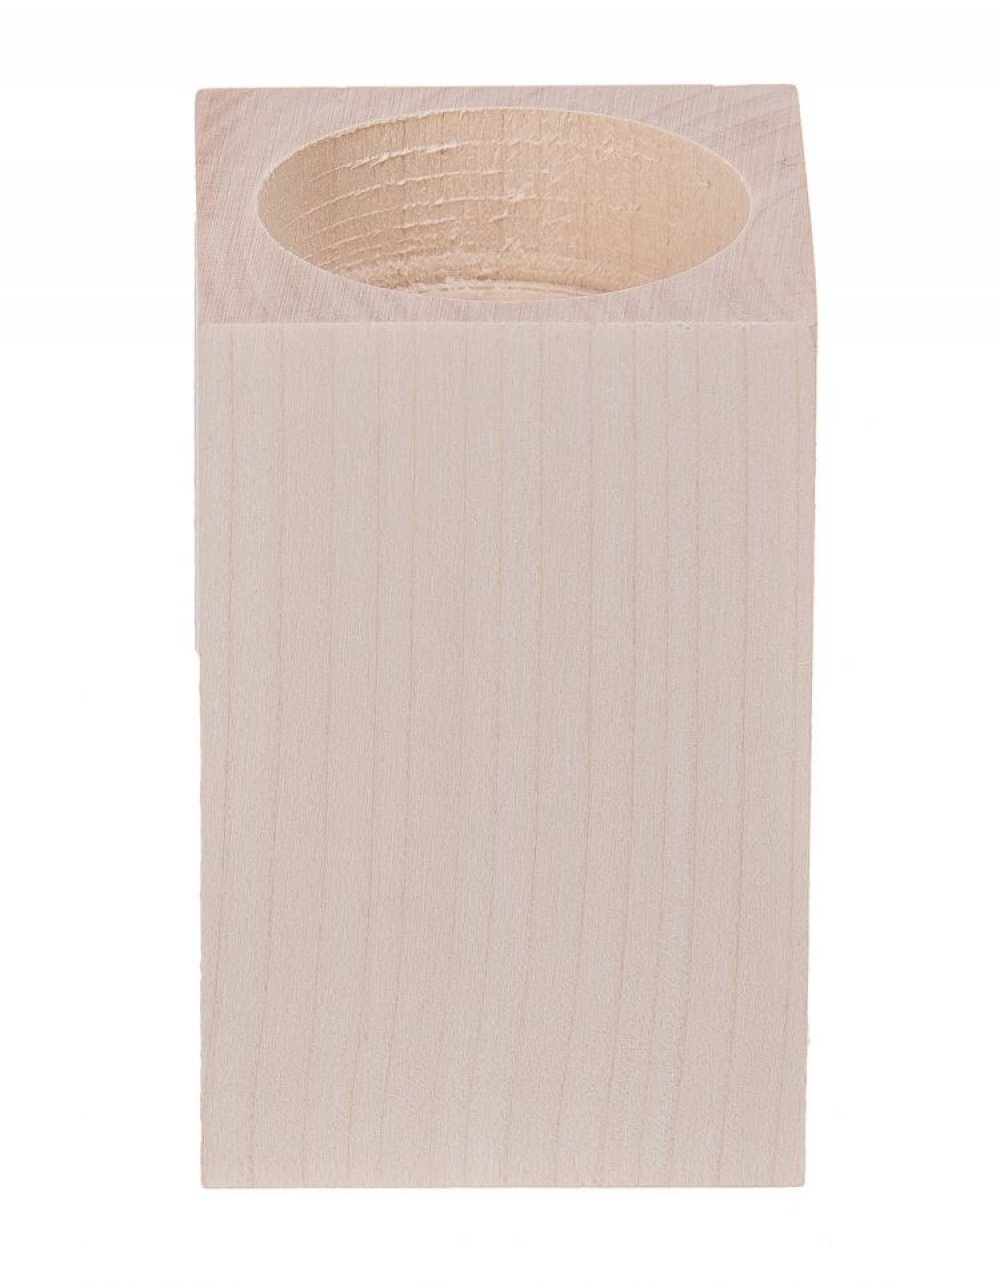 Dřevěný svícen 8 cm, bukové dřevo